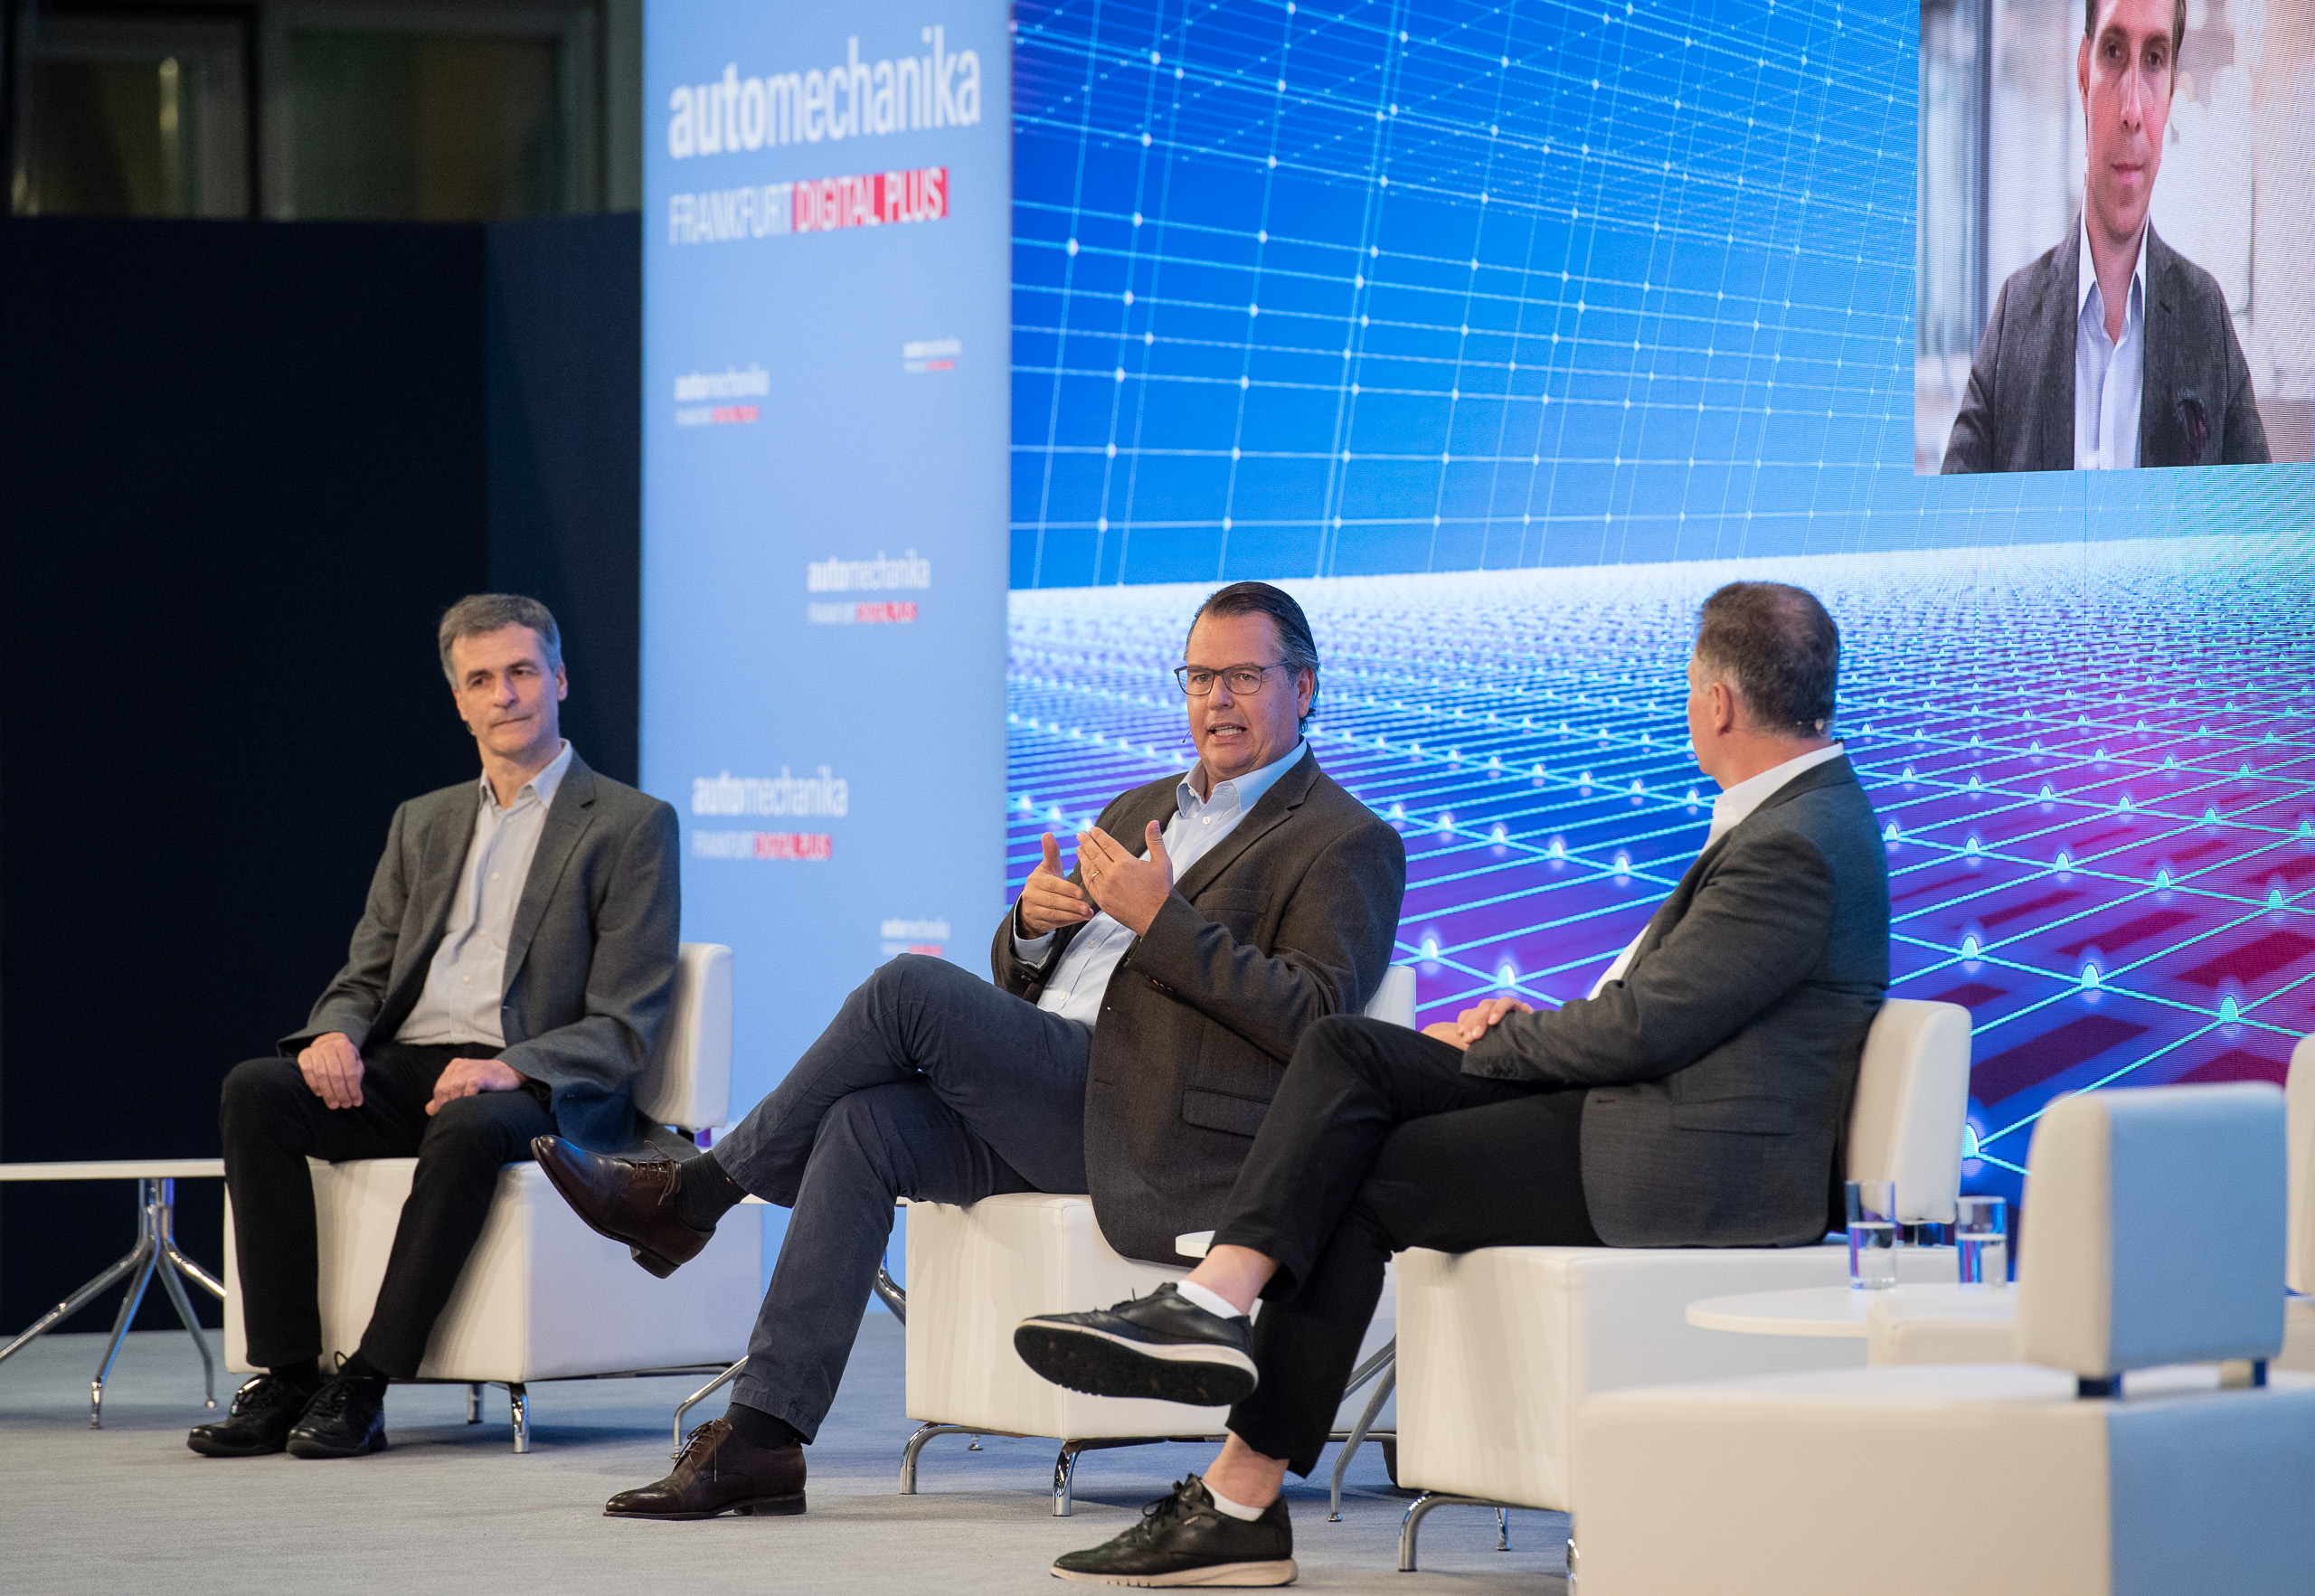 Edison Talk Franz Rother im Gespräch mit Dr. Dietmar Voggenreiter, Investor und ehemaliger Vorstand Vertrieb Audi AG, und Ulrich Grimm